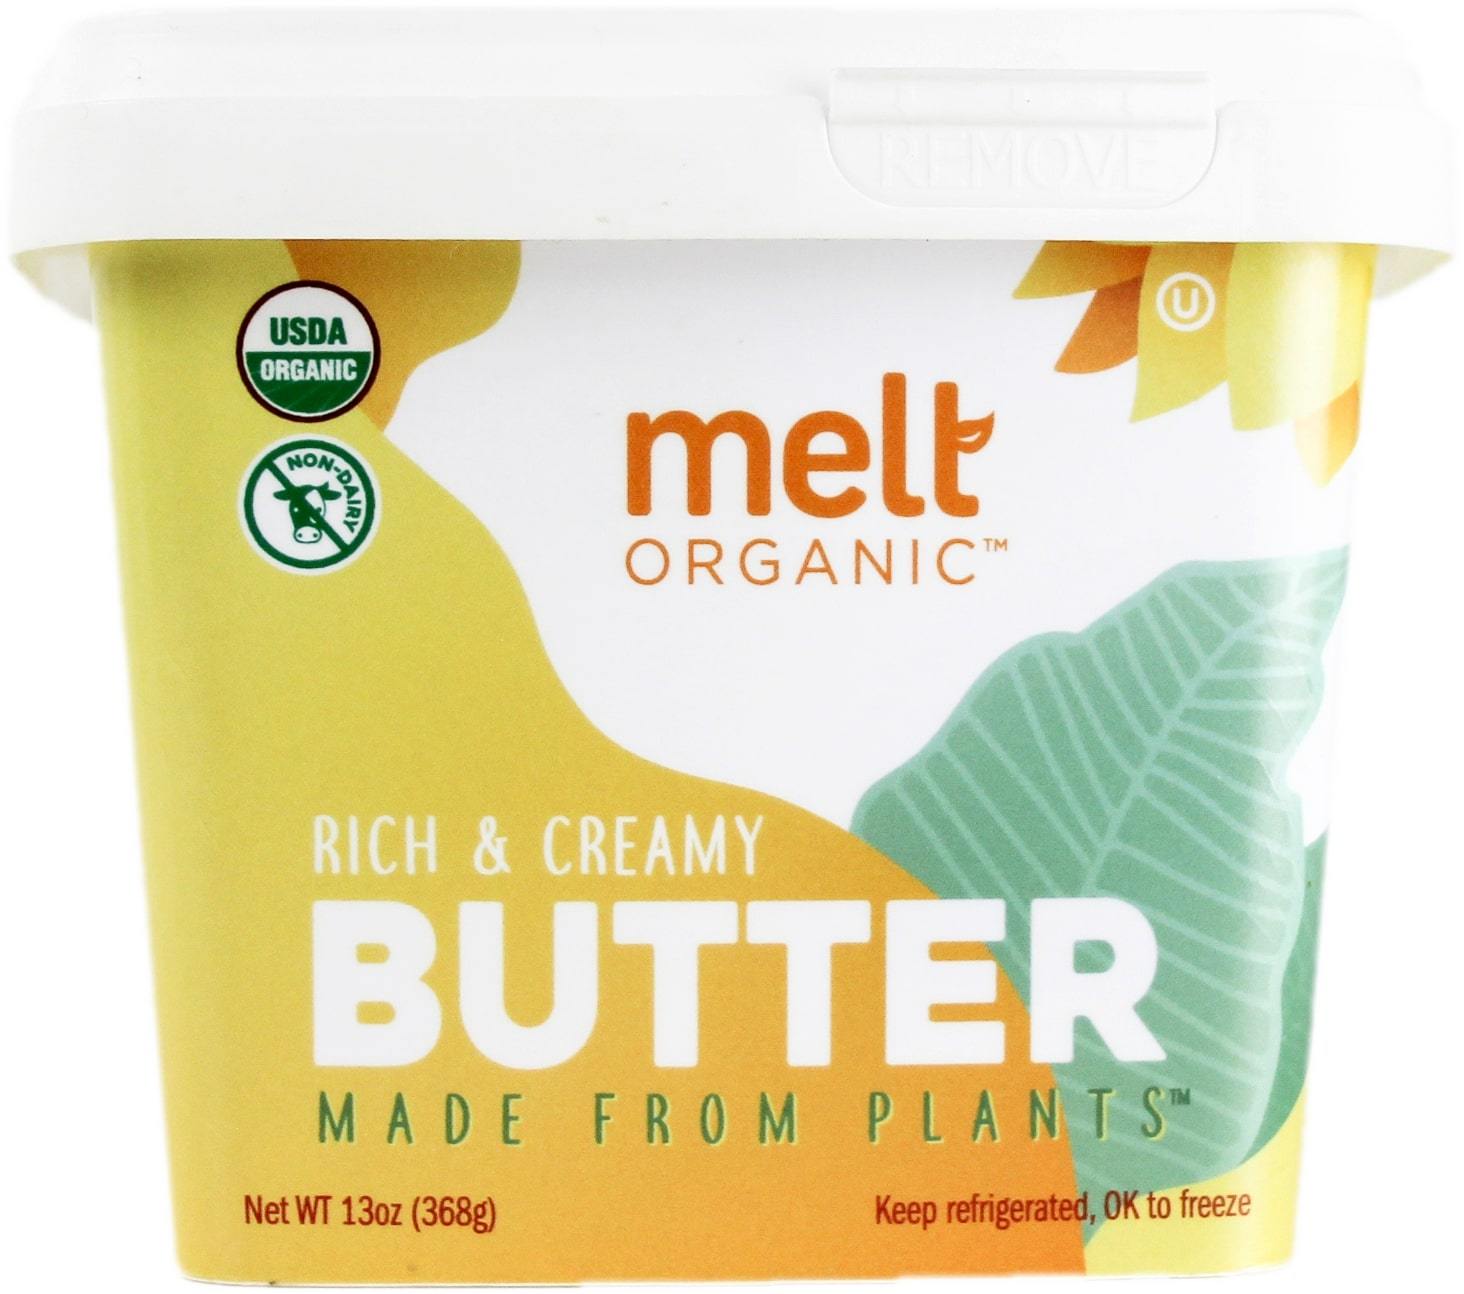 Melt Organic Butter Spread - Shop Butter & Margarine at H-E-B